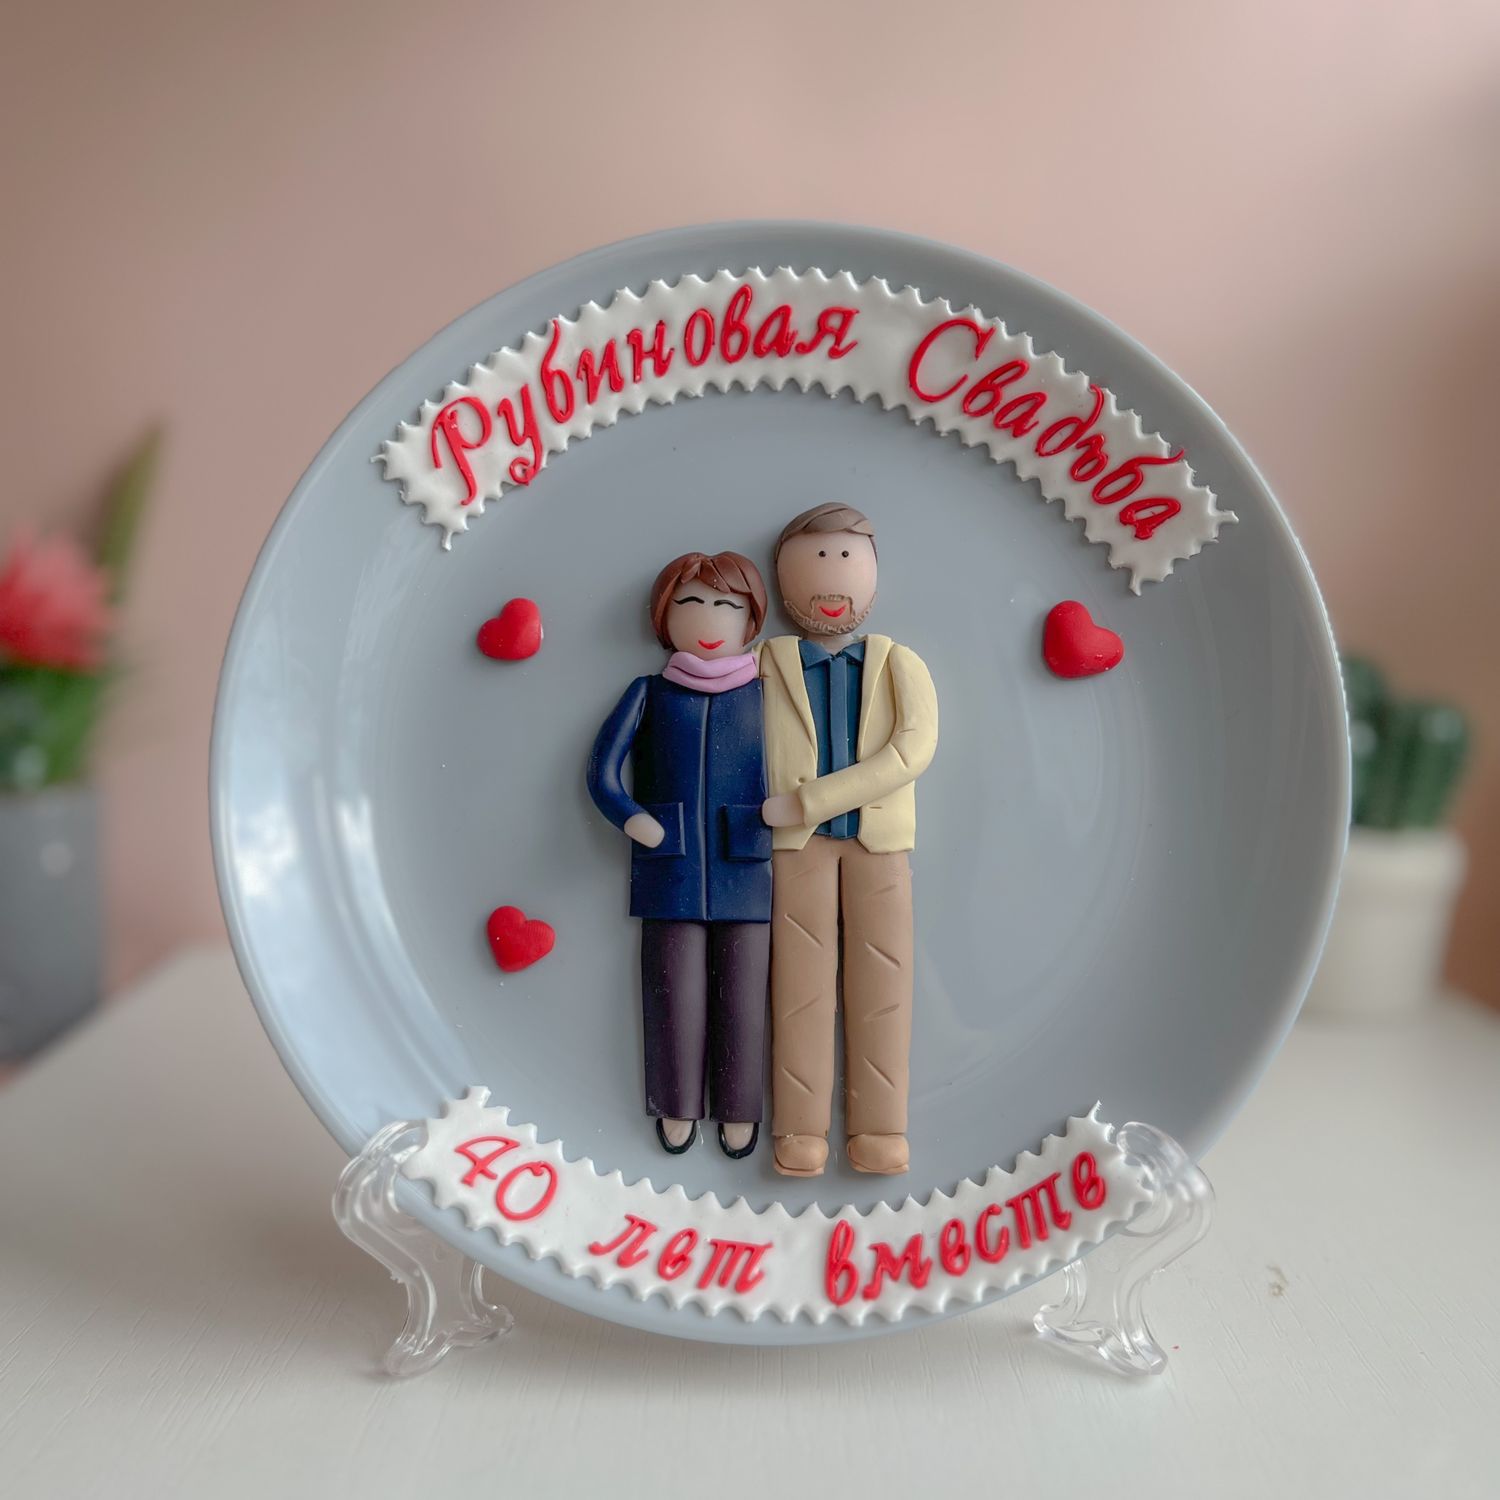 Купить подарок мужу, жене или родителям на рубиновую свадьбу – 40 лет брака